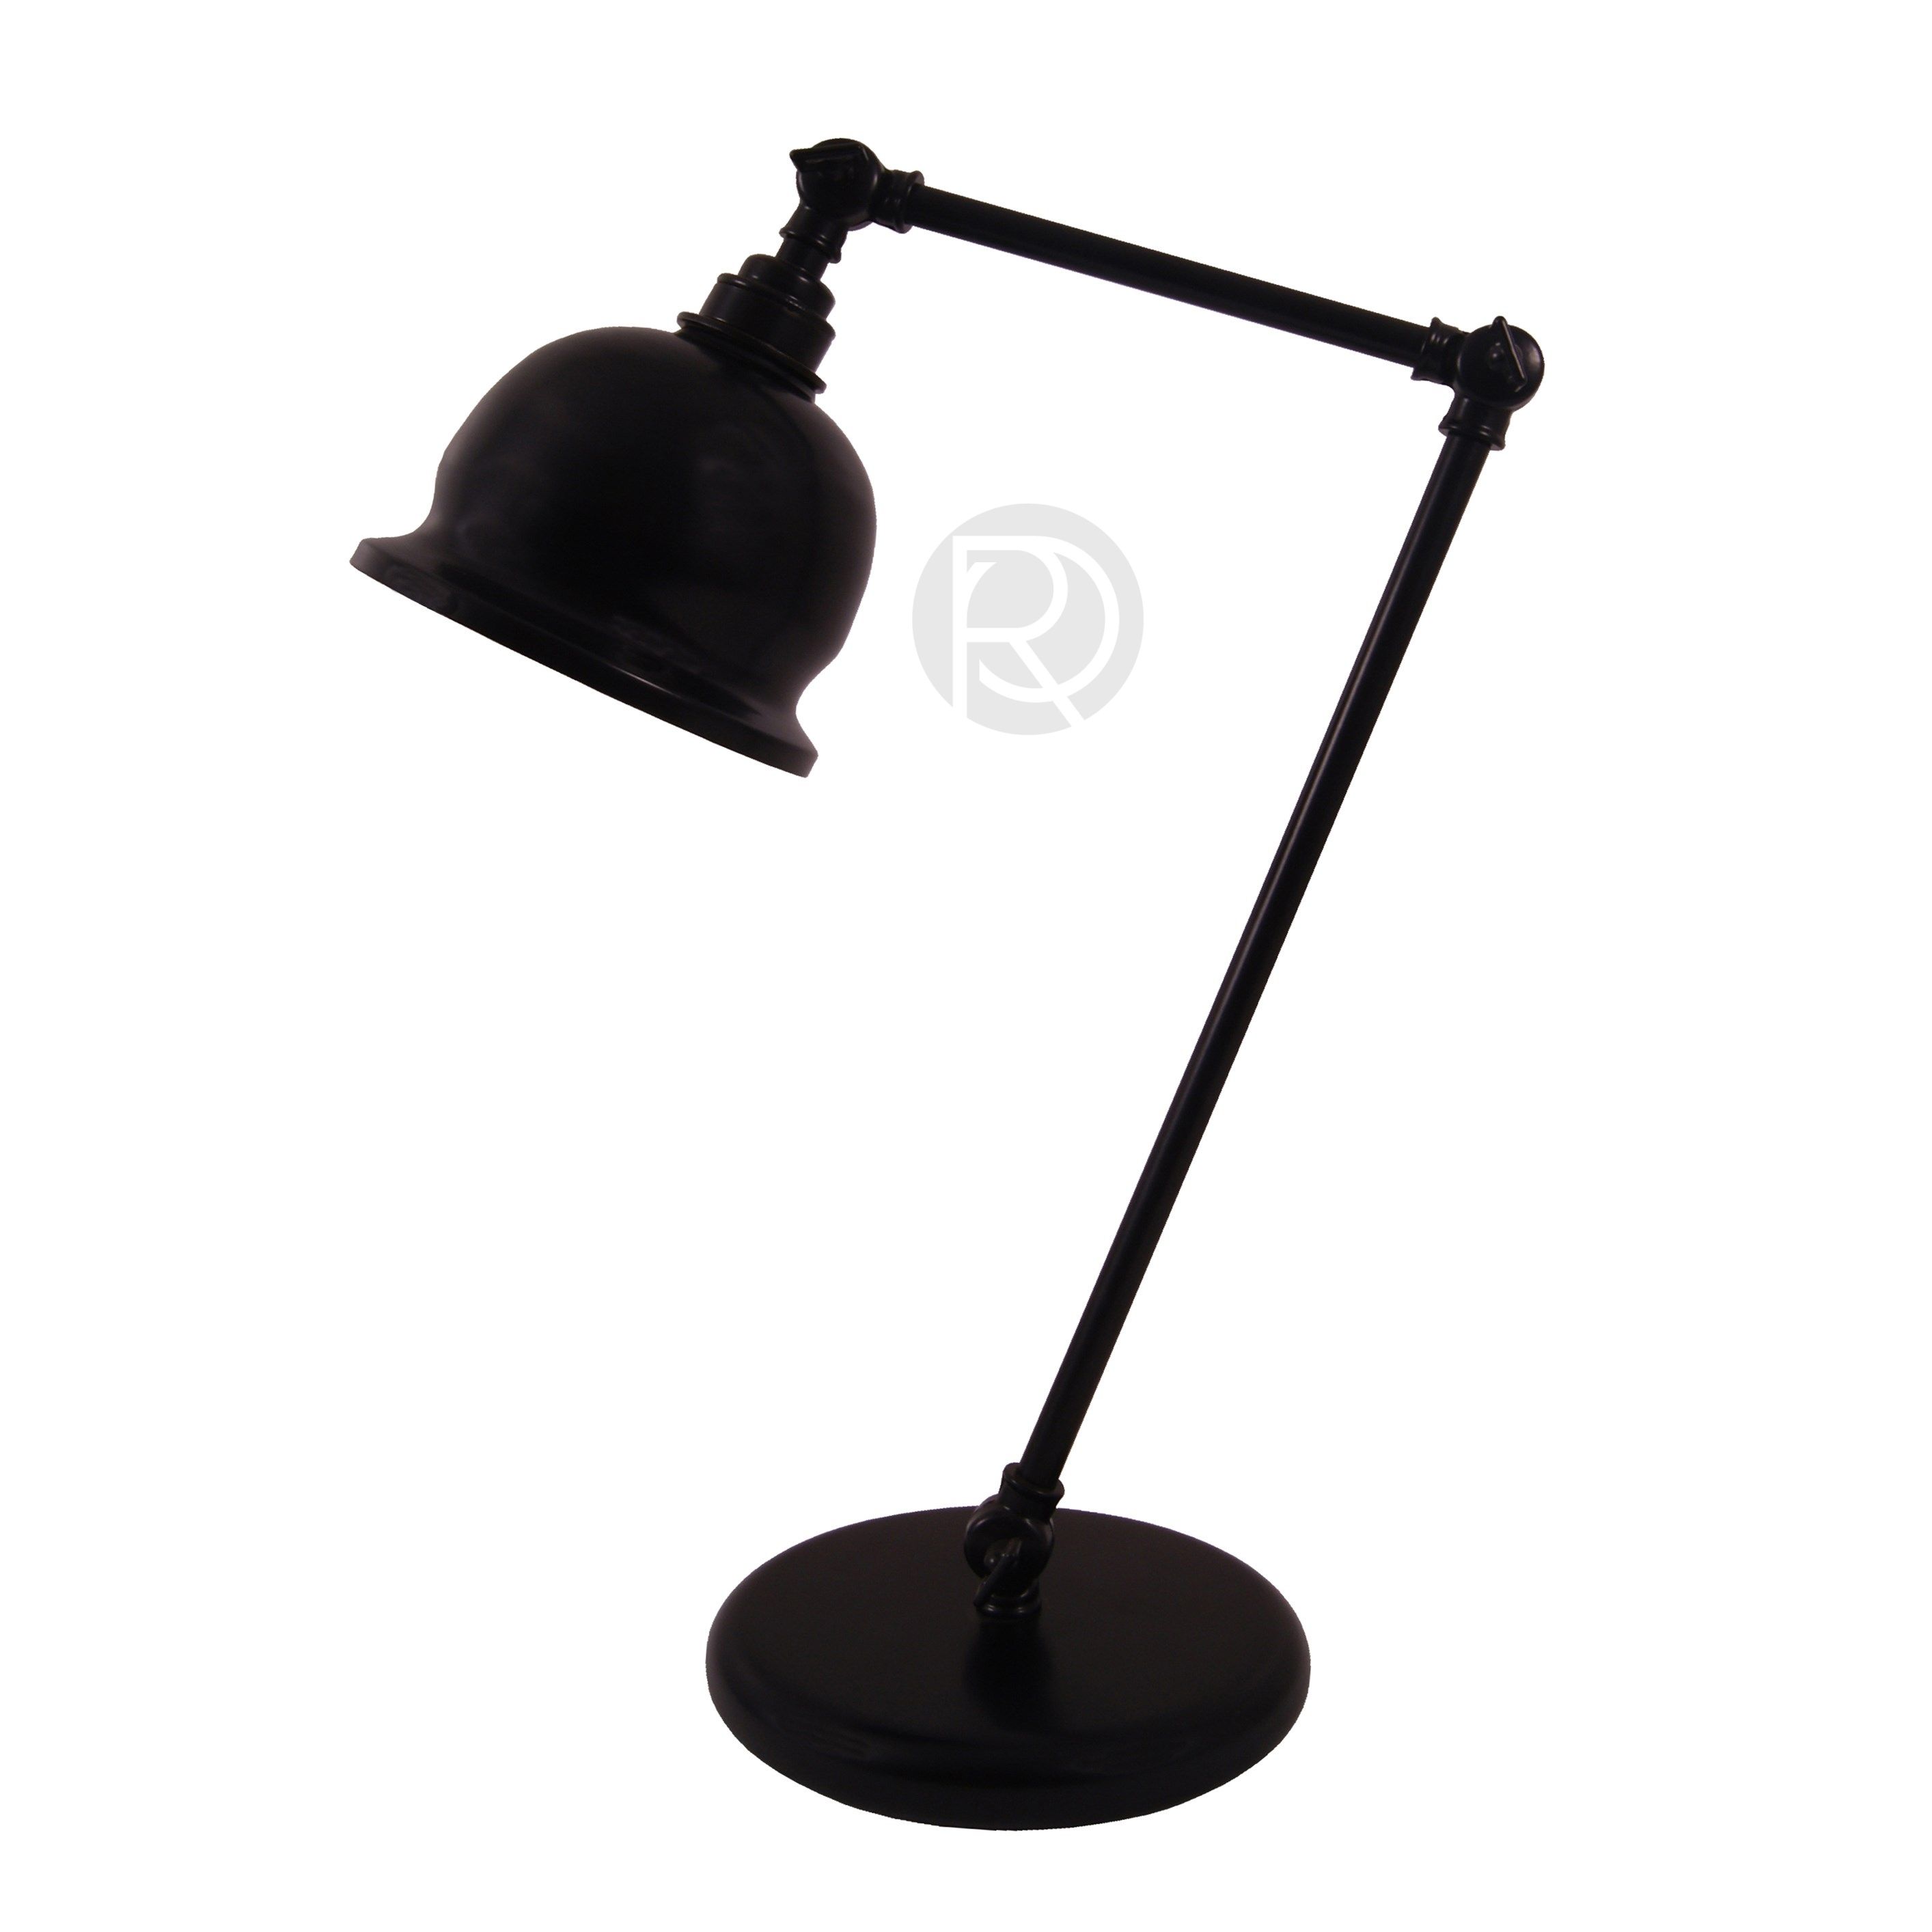 Настольная лампа DALE by Mullan Lighting